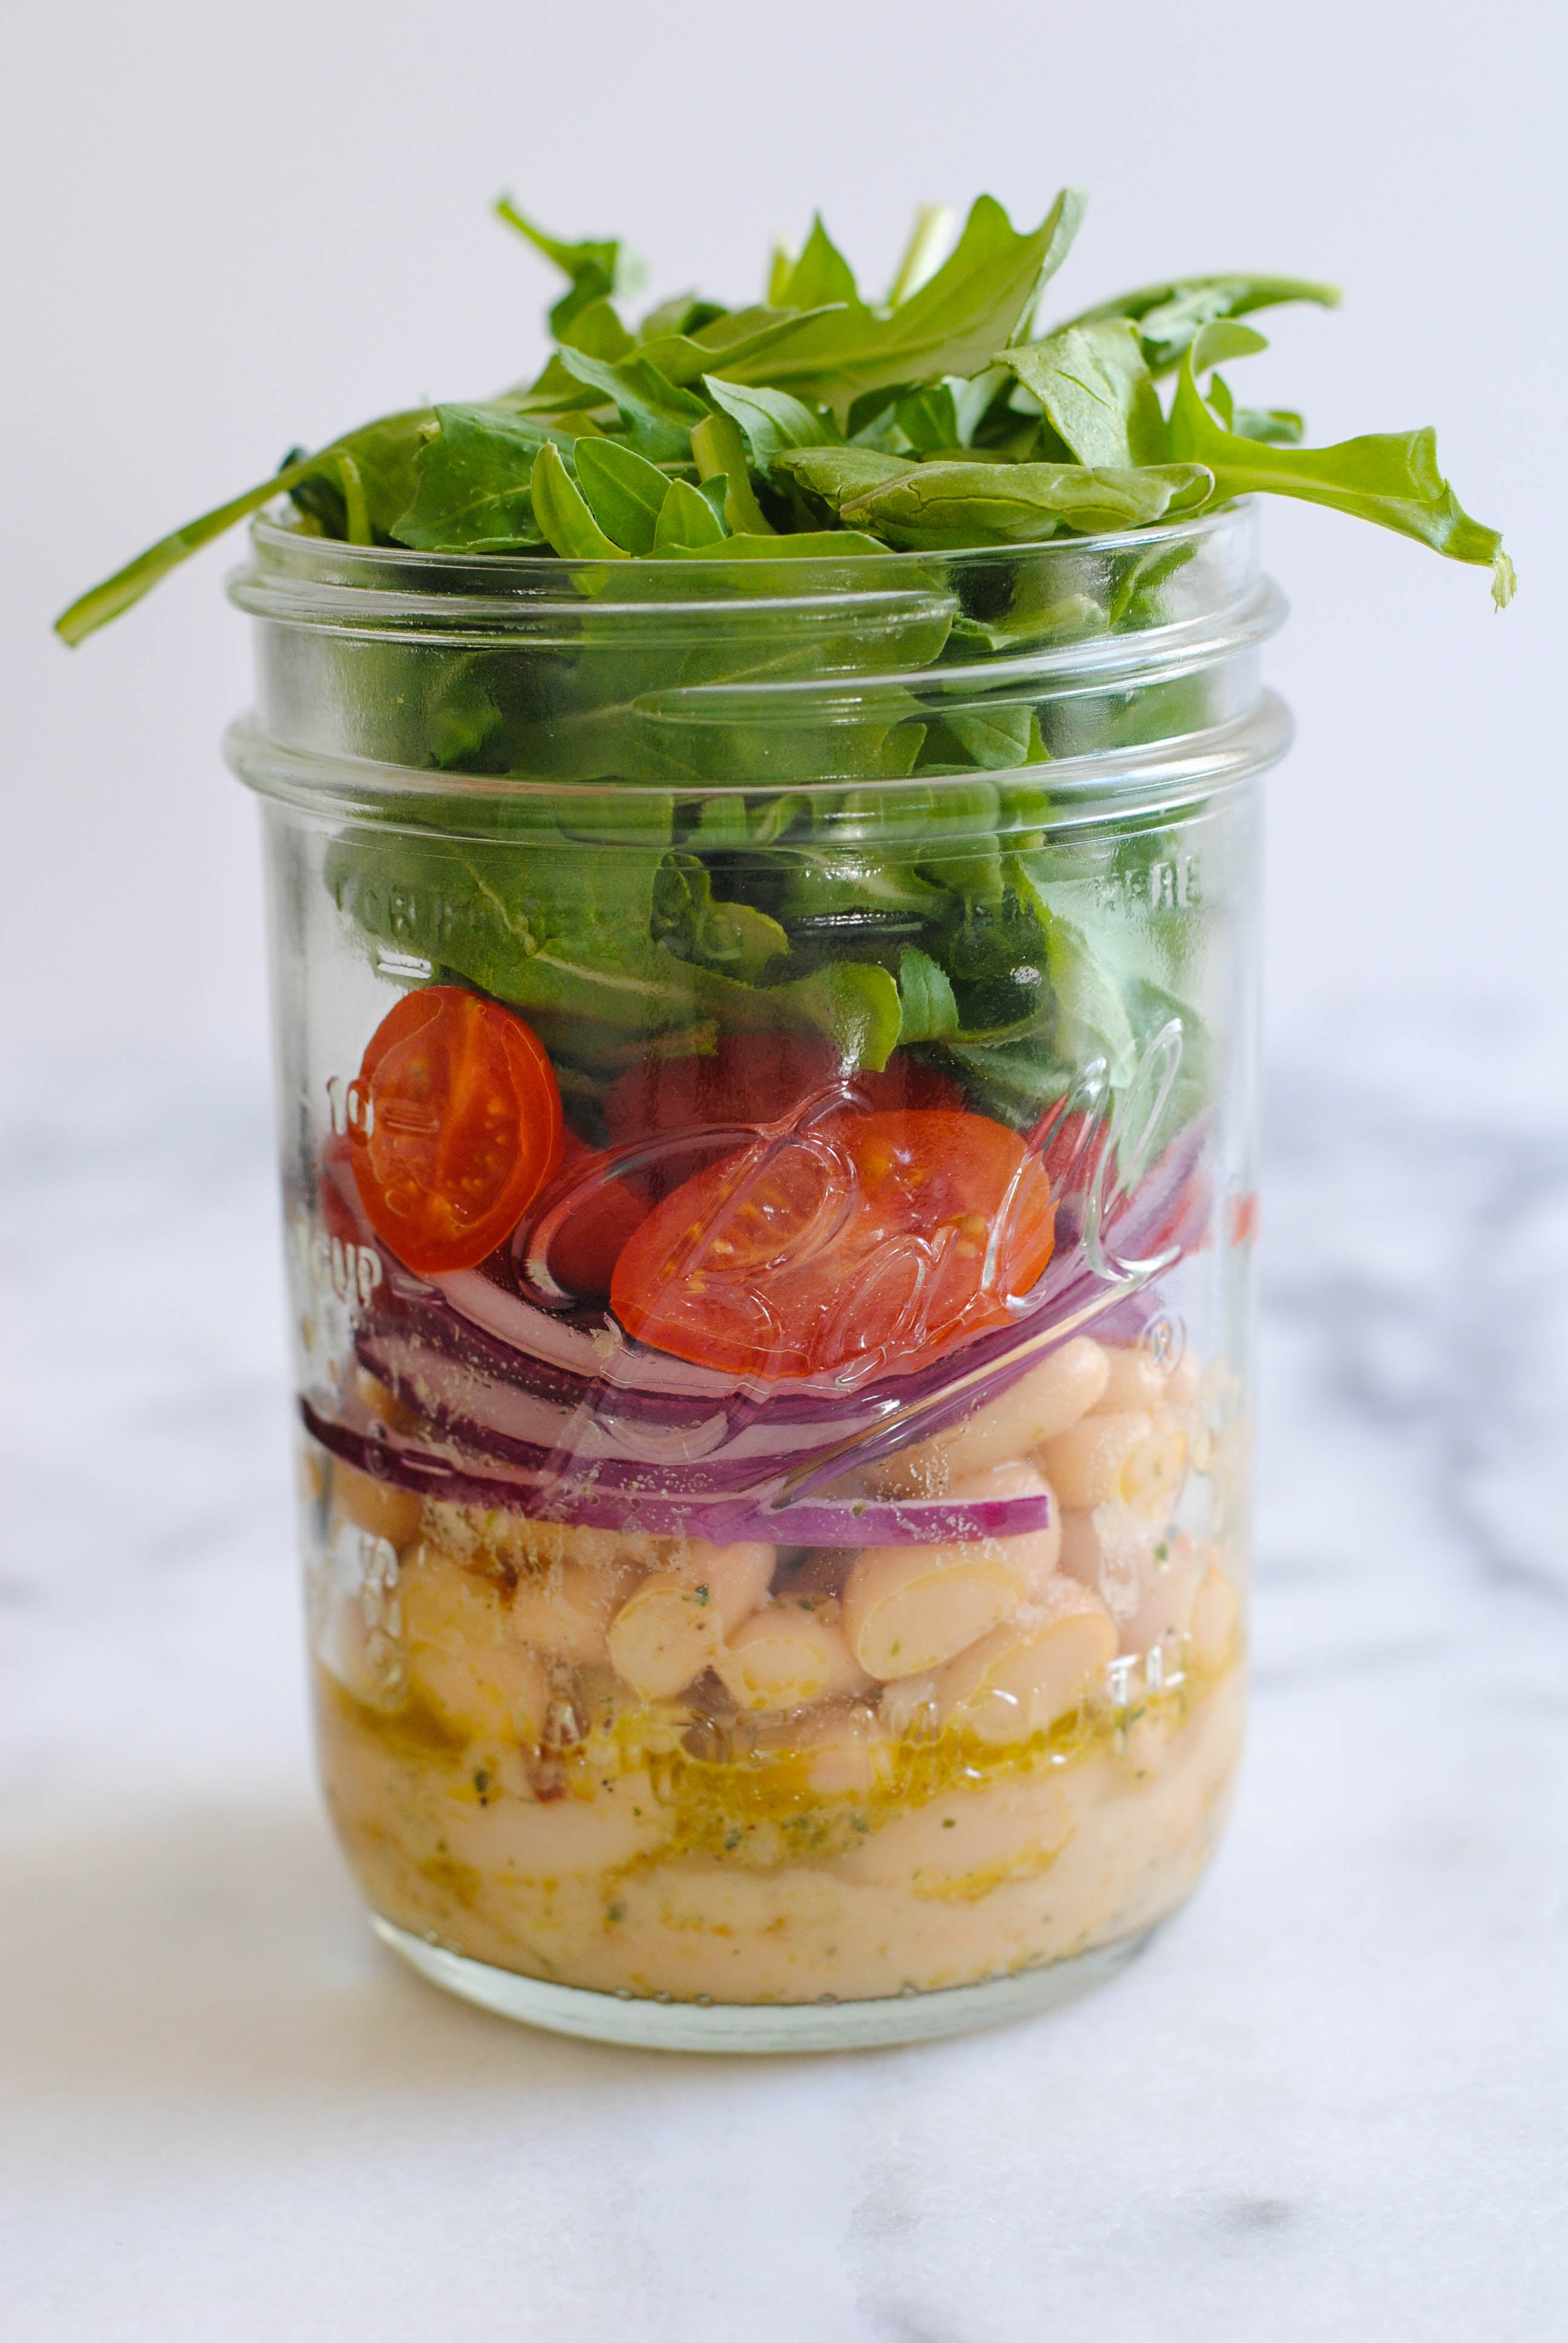 LUNCH MEAL PREP - Mason Jar Salad #masonjarsalad #saladinajar 